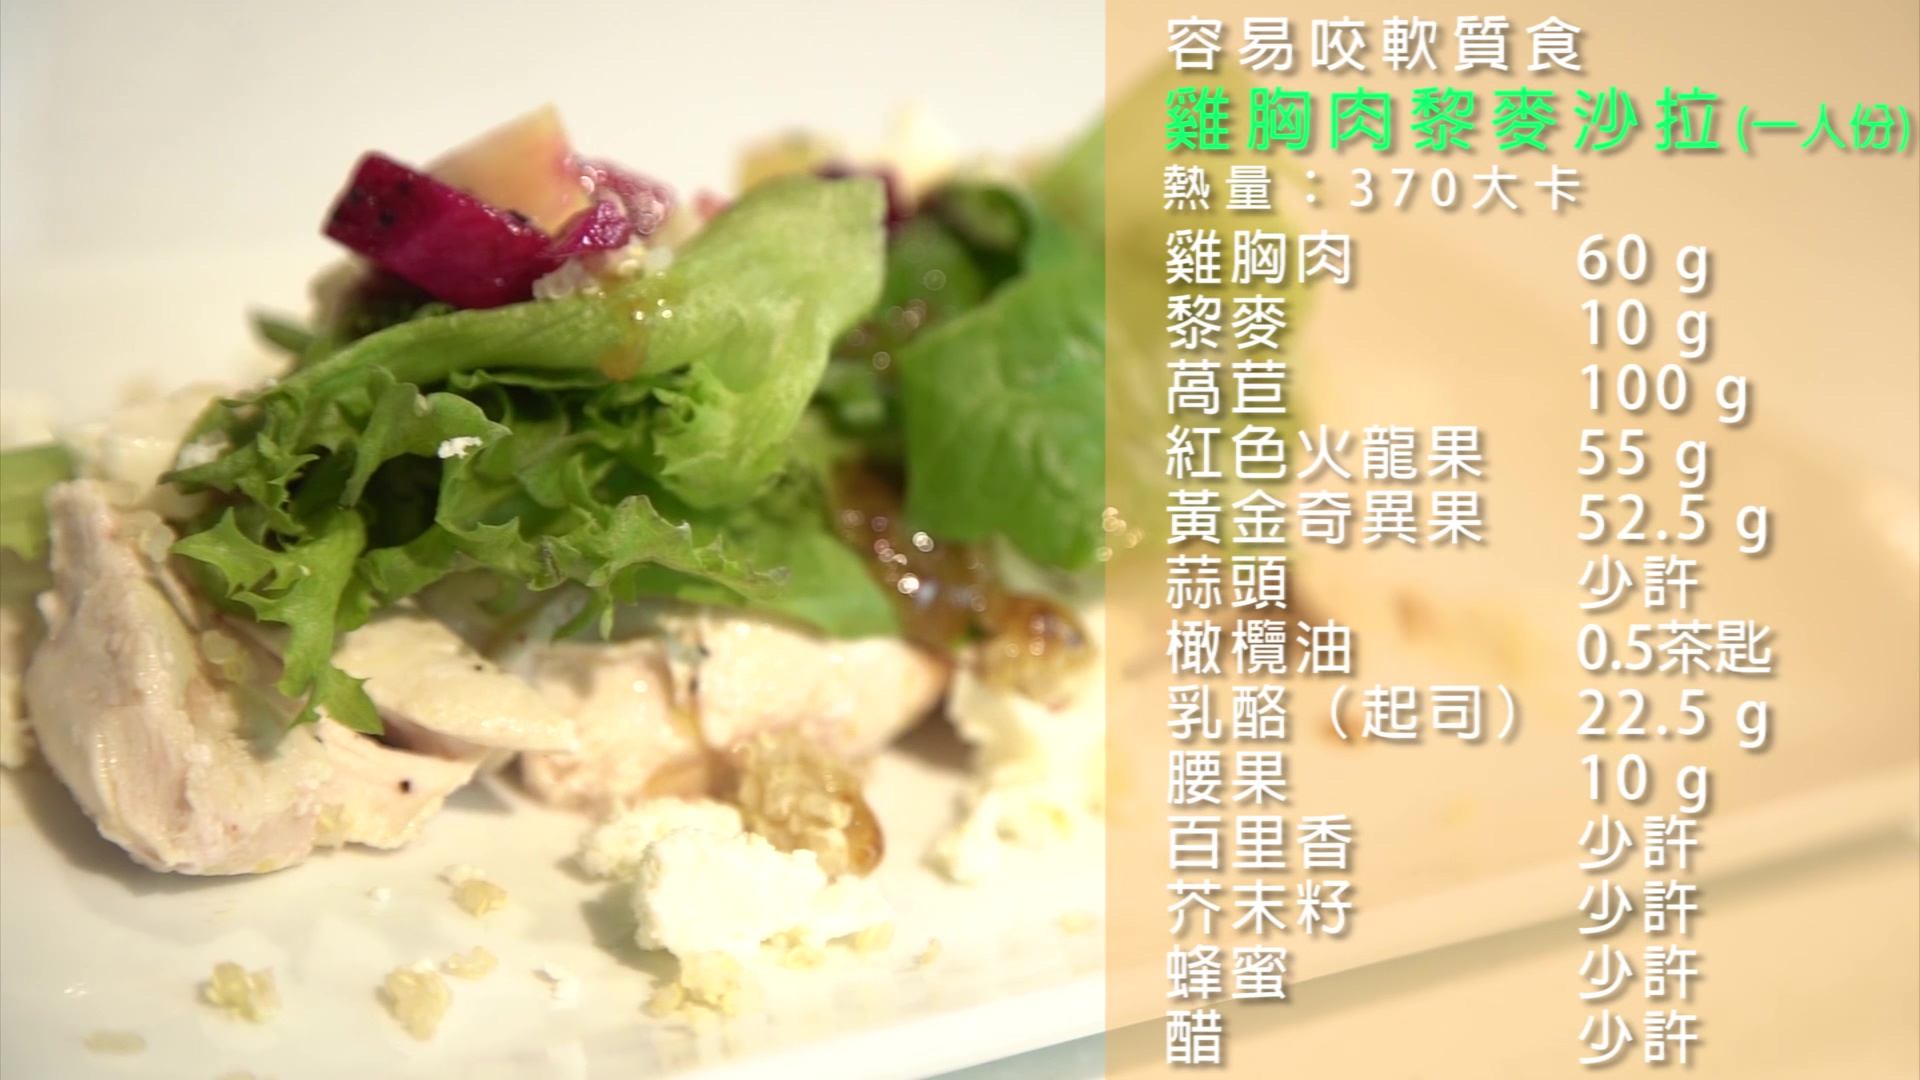 飲食質地料理影片-容易咬軟質食-雞胸肉黎麥沙拉套餐篇